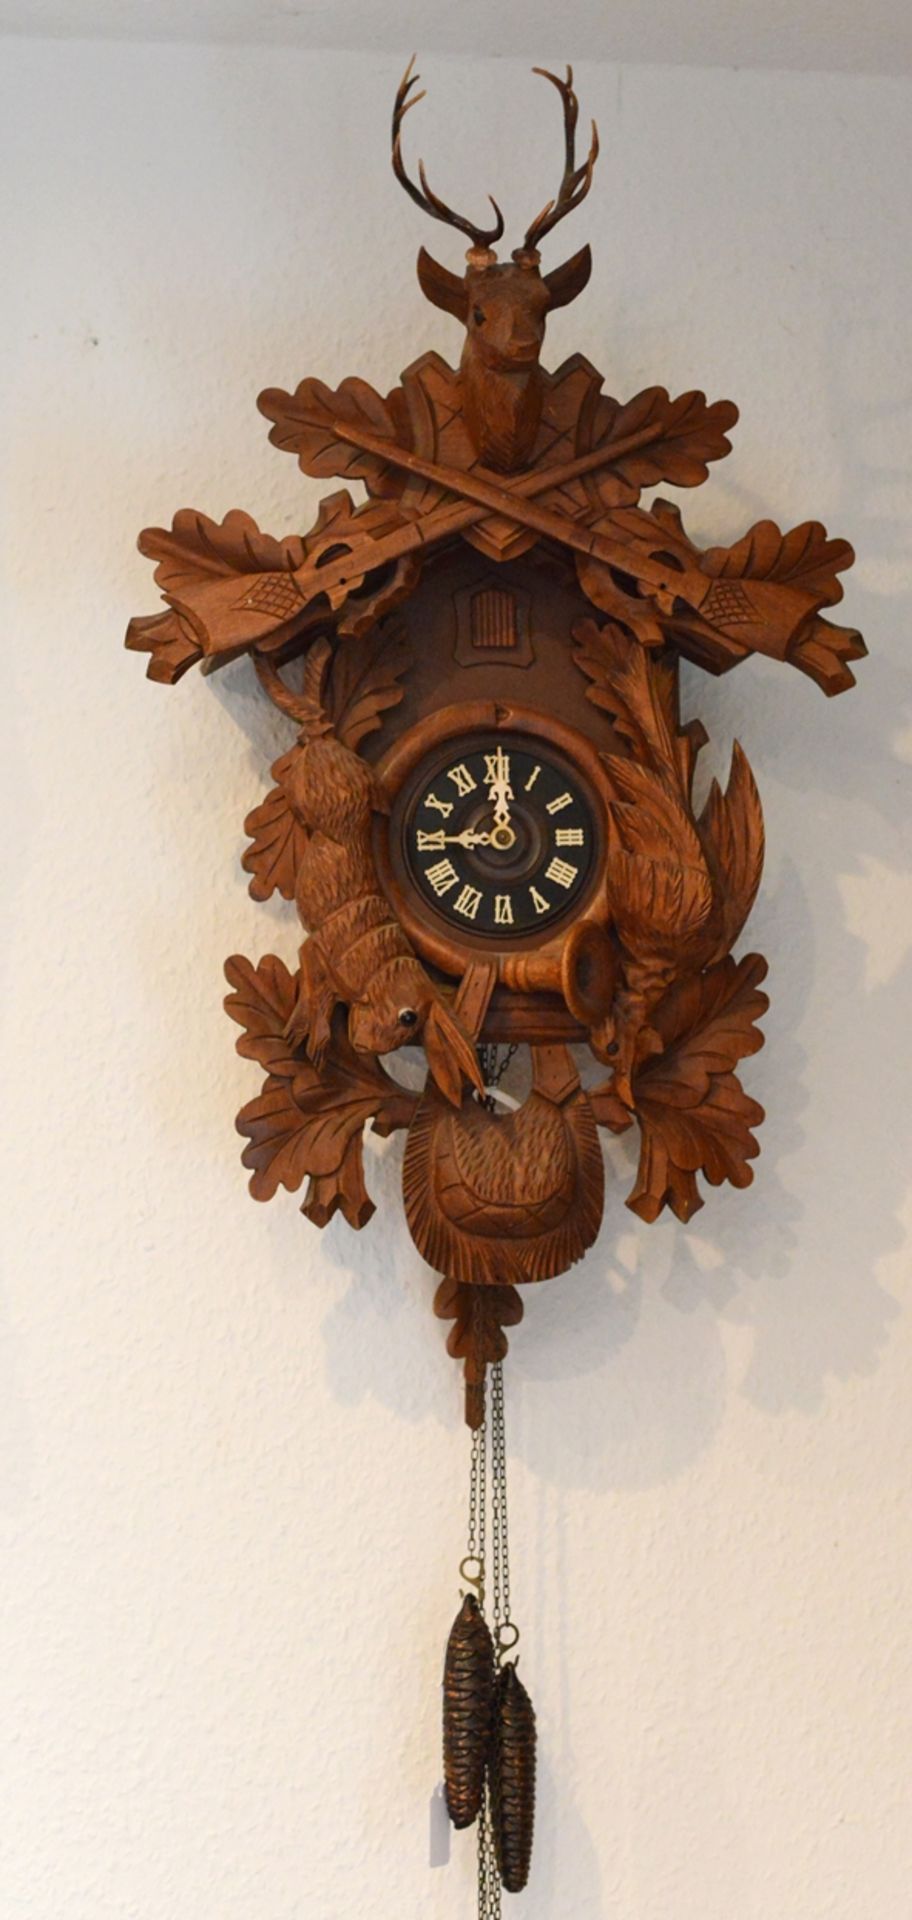 Große Kuckucks-Uhr, mit Jagd-Elementen, bekrönt von Hirschkopf, Holz beschnitzt, Süddeutschland, 20 - Bild 2 aus 2